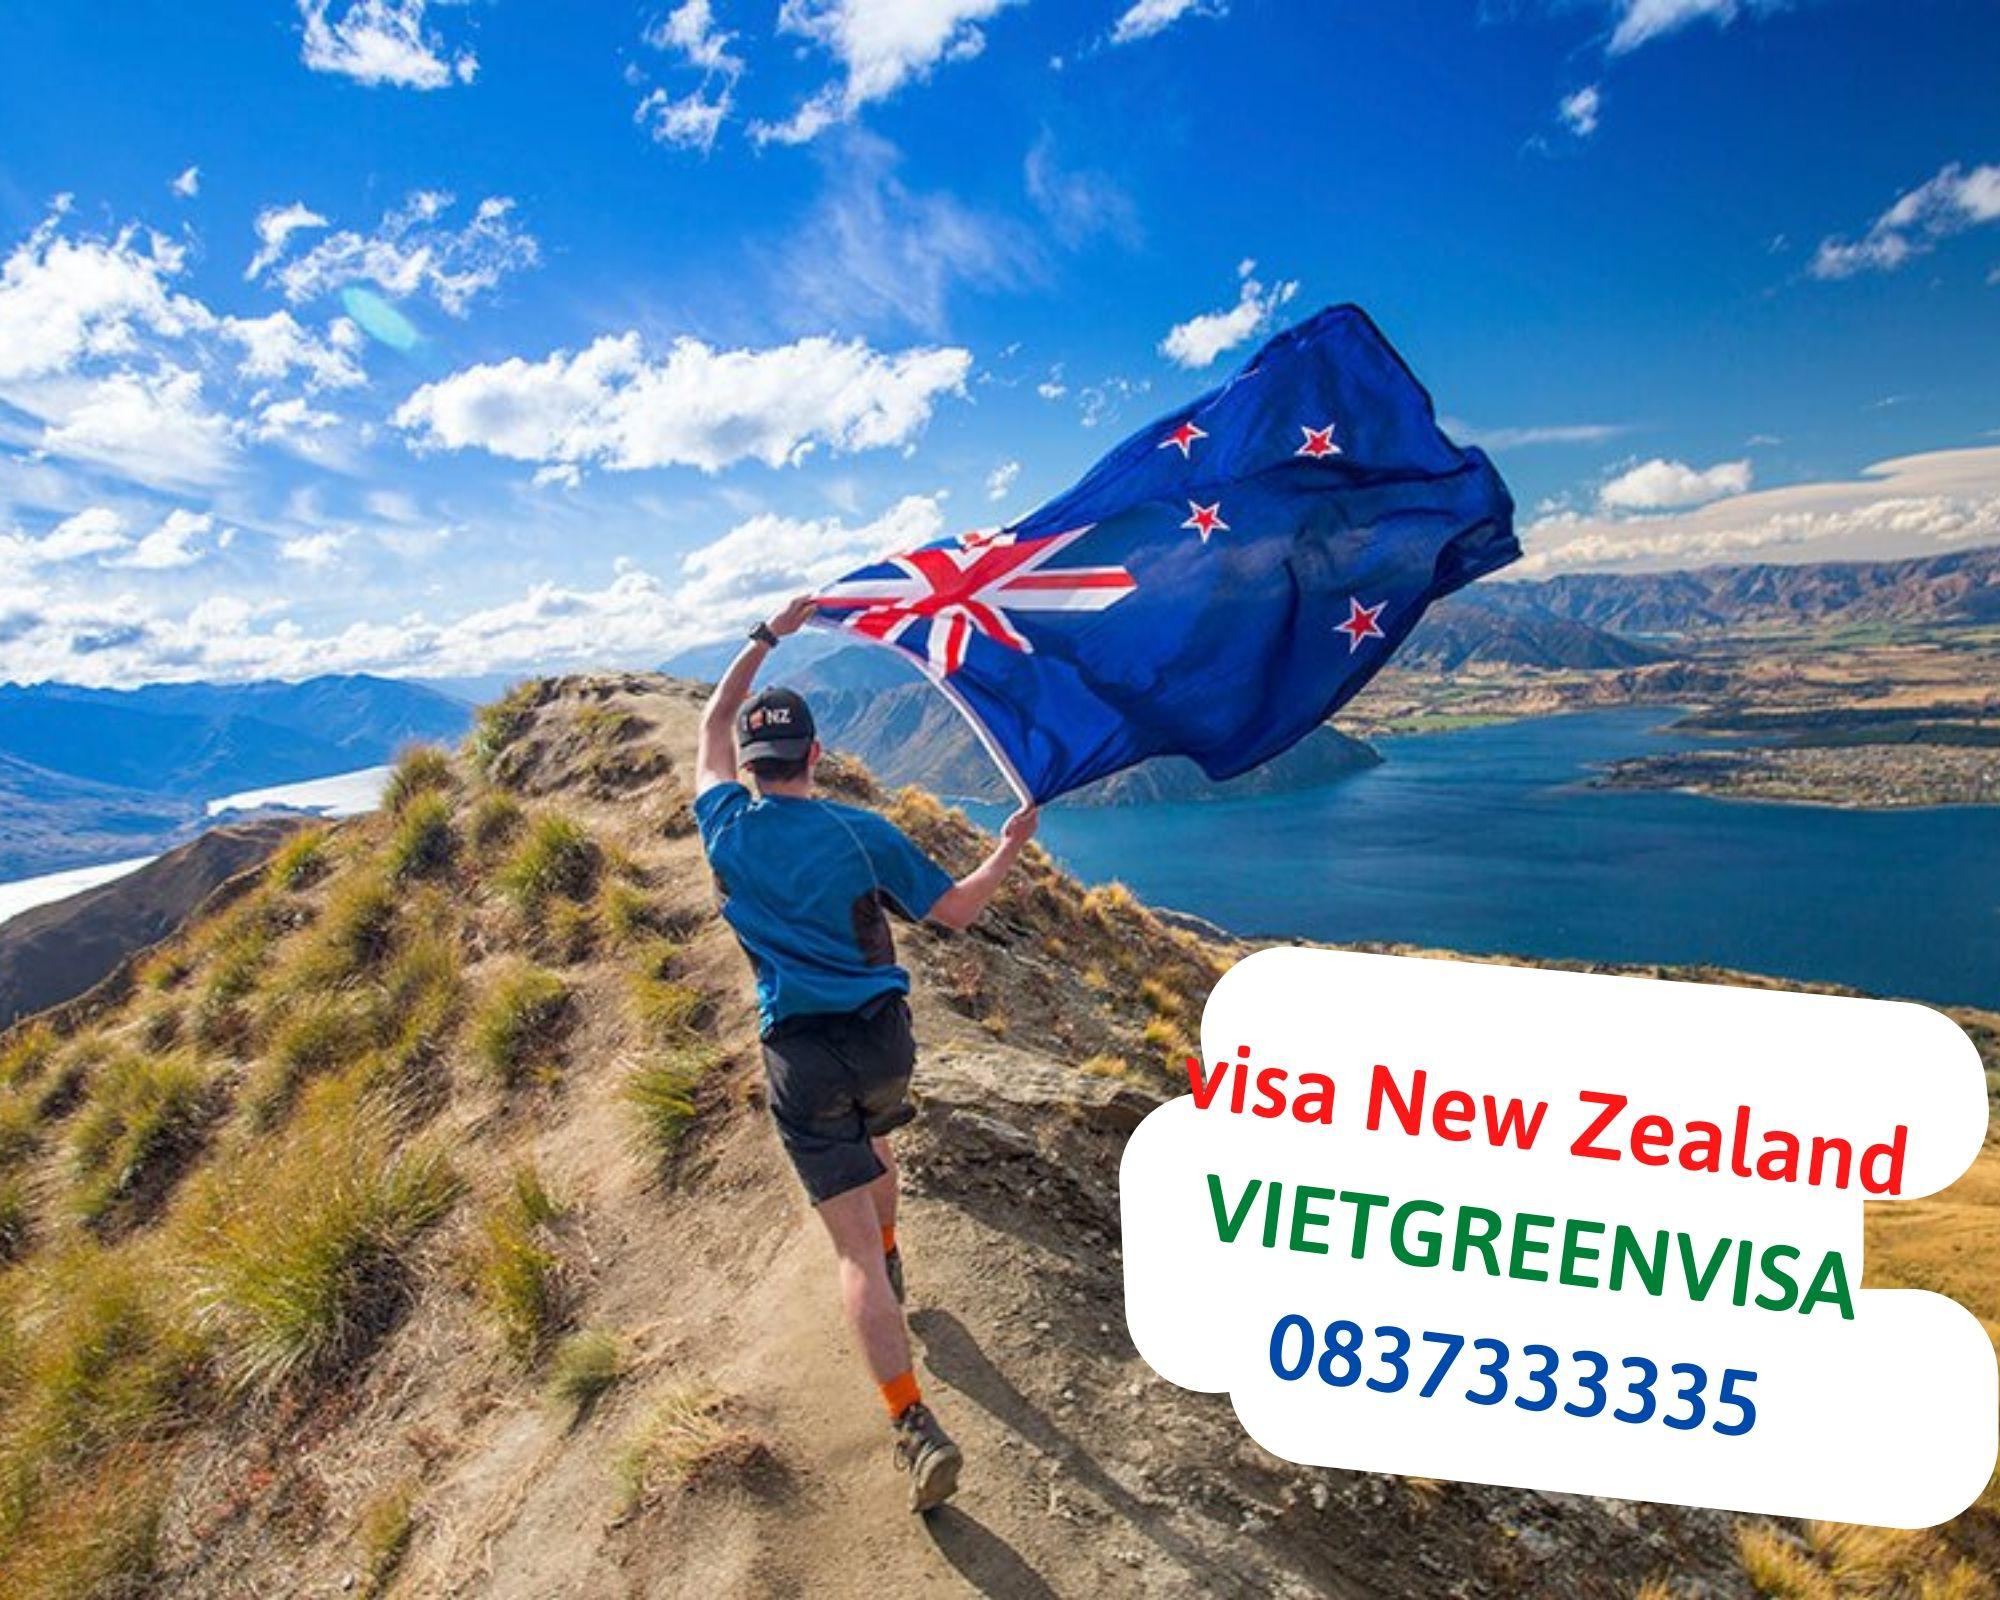 Kinh nghiệm xin visa New Zealand tự túc